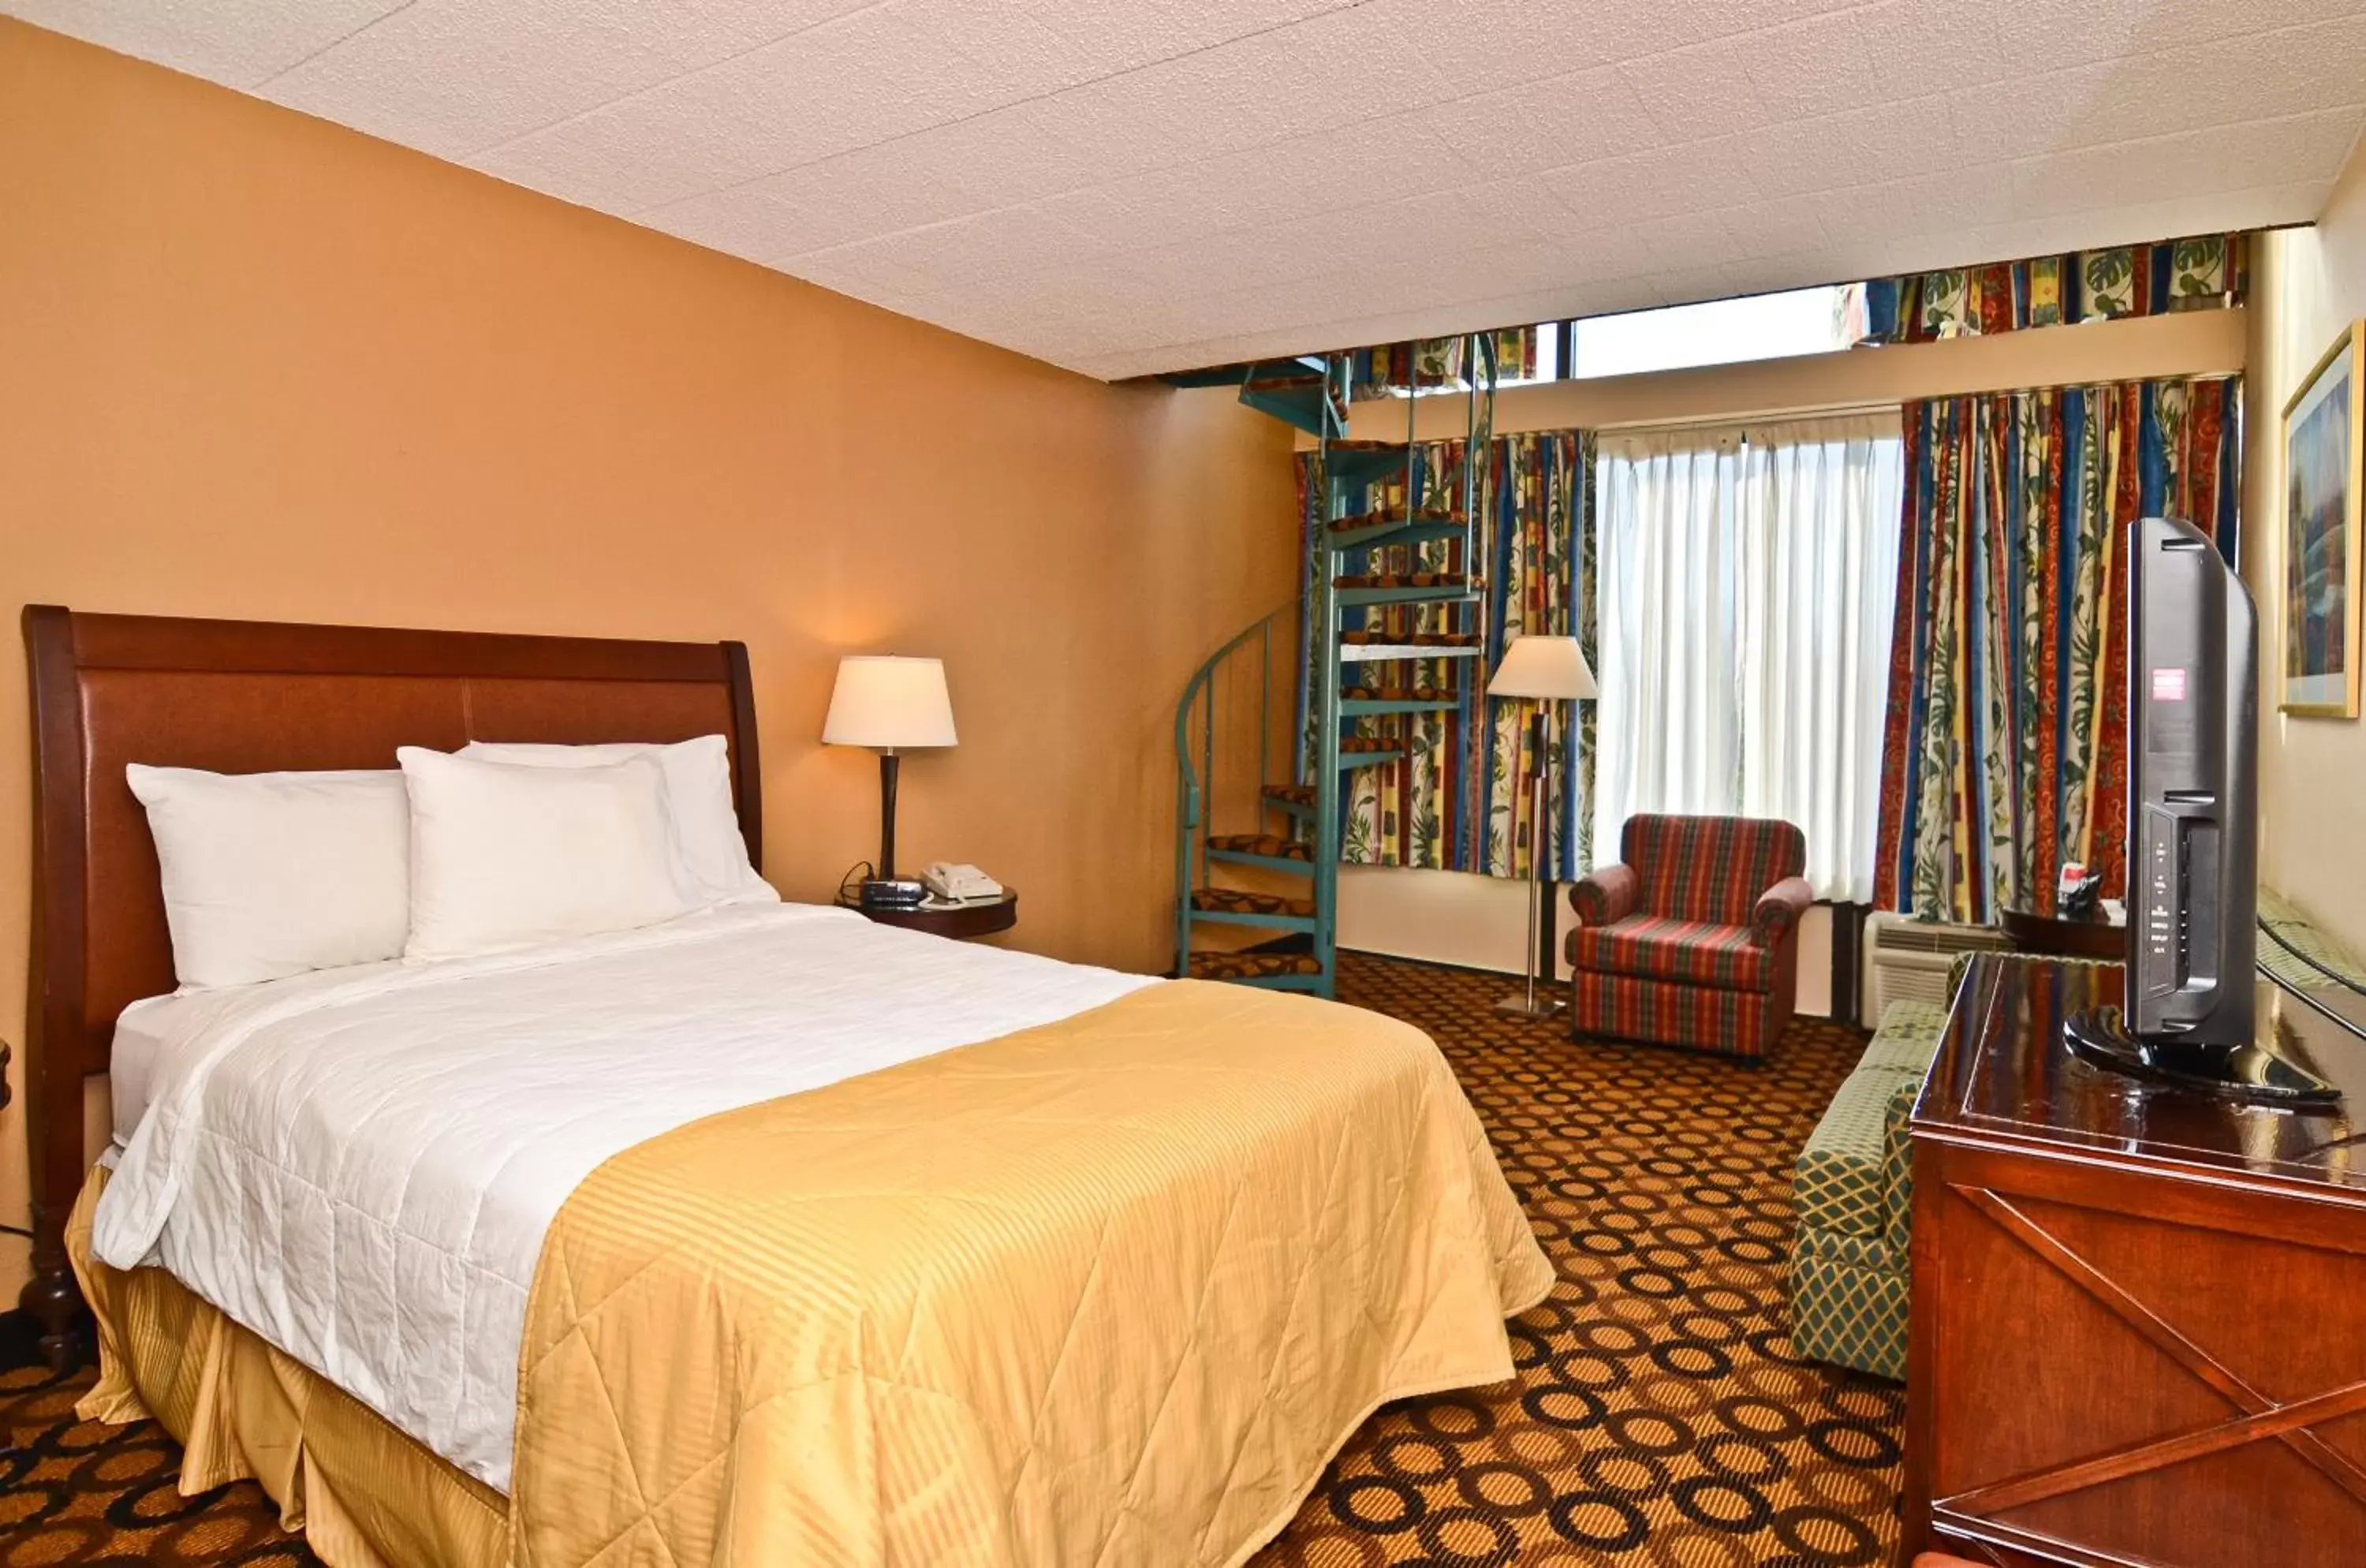 Bedroom in Pocono Resort & Conference Center - Pocono Mountains